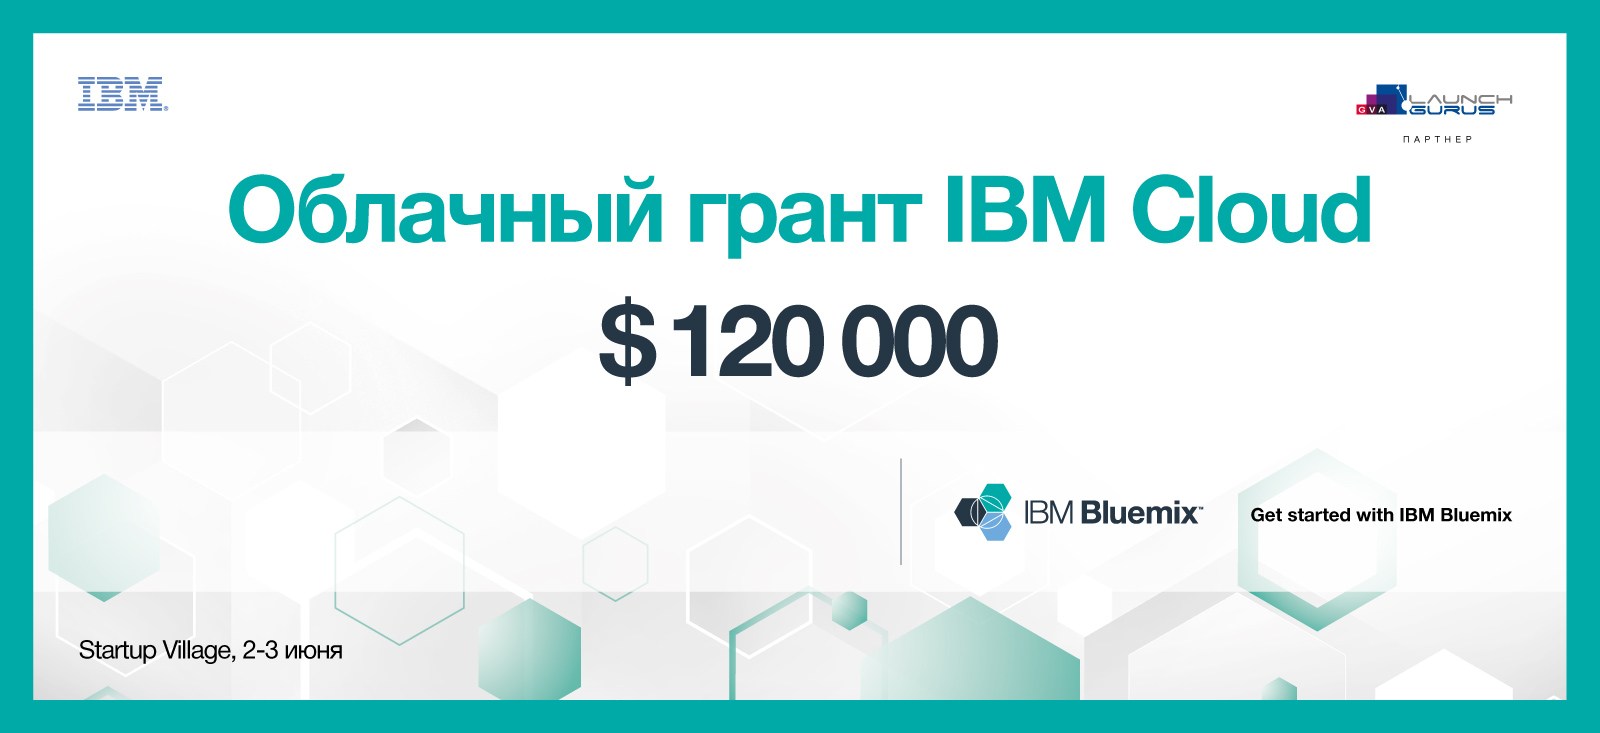 Новости партнеров: IBM вручит грант до $120,000 на Startup Village!